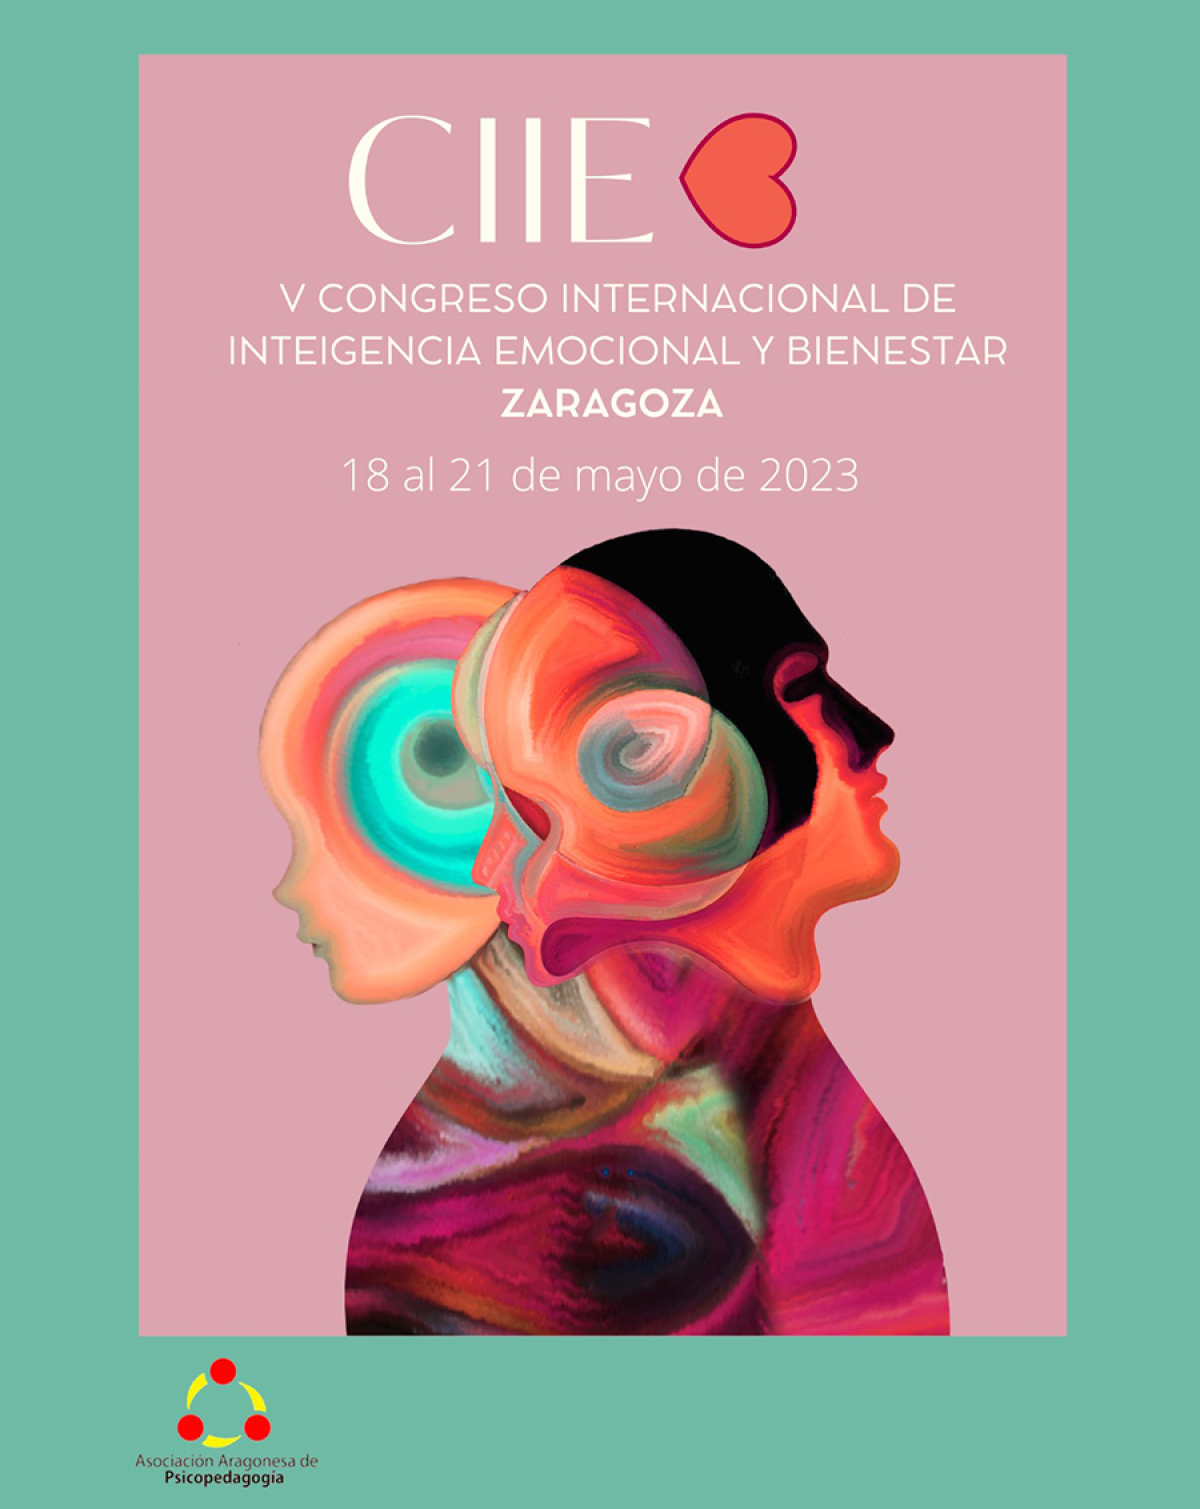 V Congreso Internacional de Inteligencia Emocional y Bienestar, 18 al 21 de mayo en Zaragoza